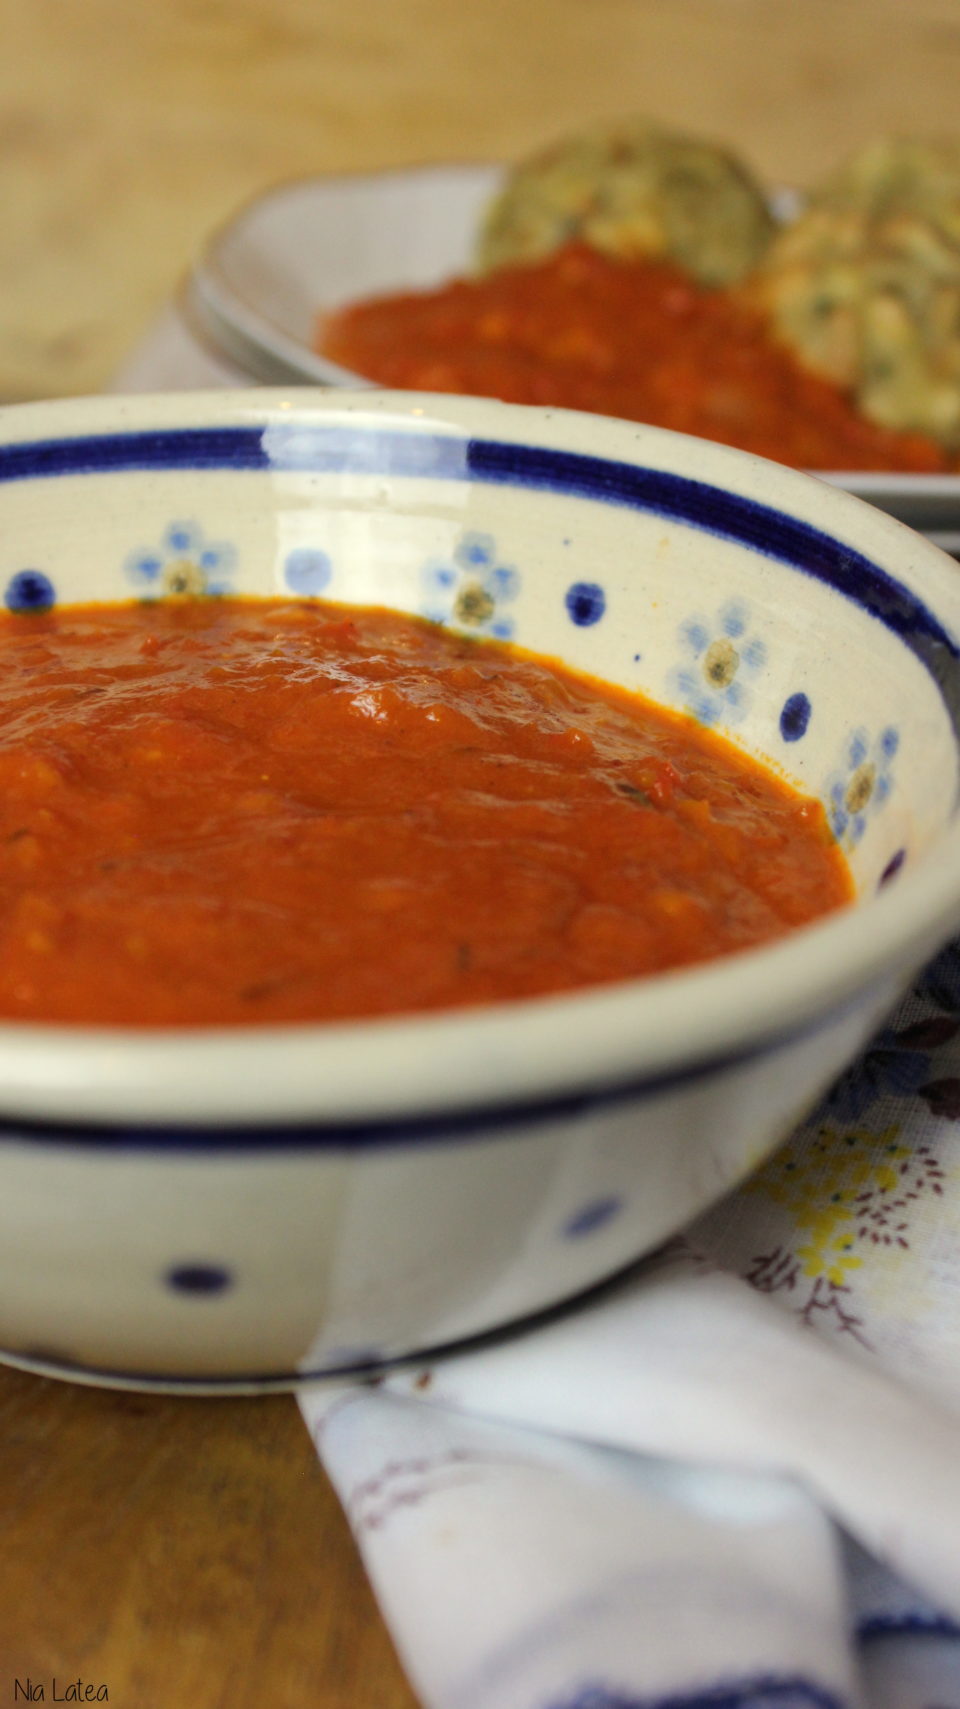 Schnelle Paprika-Tomaten-Sauce - Nia Latea